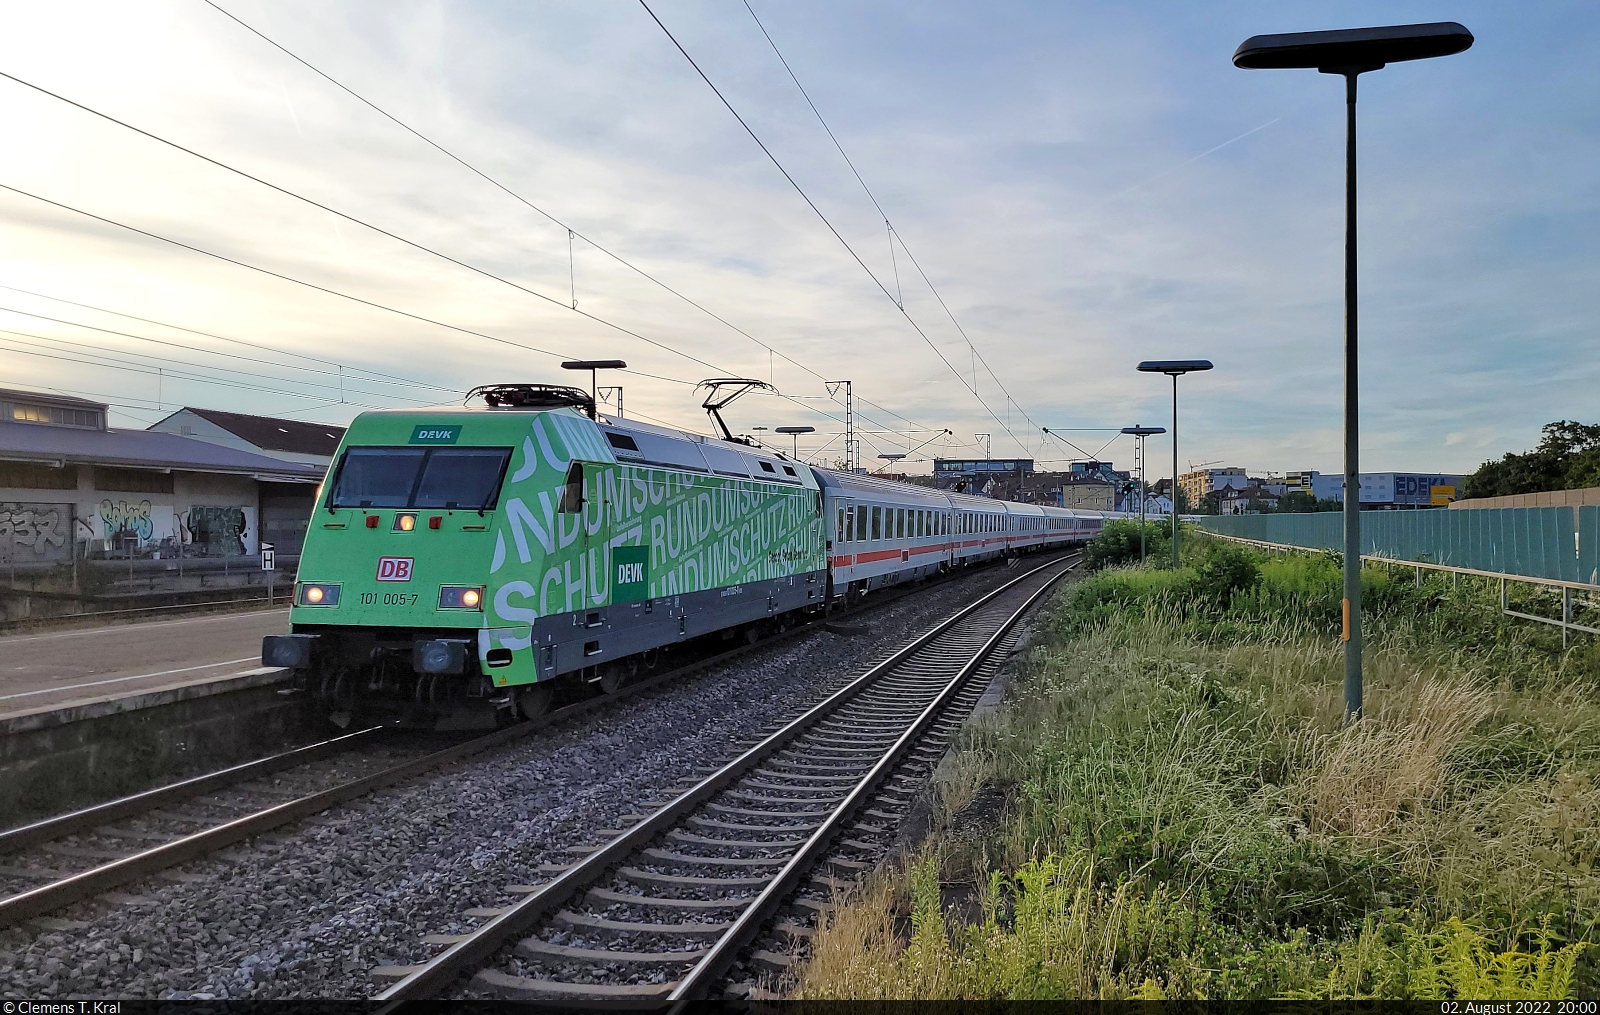 Die grüne DEVK 101 005-7 rollt verspätet nach Stuttgart hinein – hier im Bahnhof Stuttgart-Zuffenhausen.

🧰 DB Fernverkehr
🚝 IC 2297 (Linie 62) Frankfurt(Main)Hbf–München Hbf [+10]
🕓 2.8.2022 | 20:00 Uhr